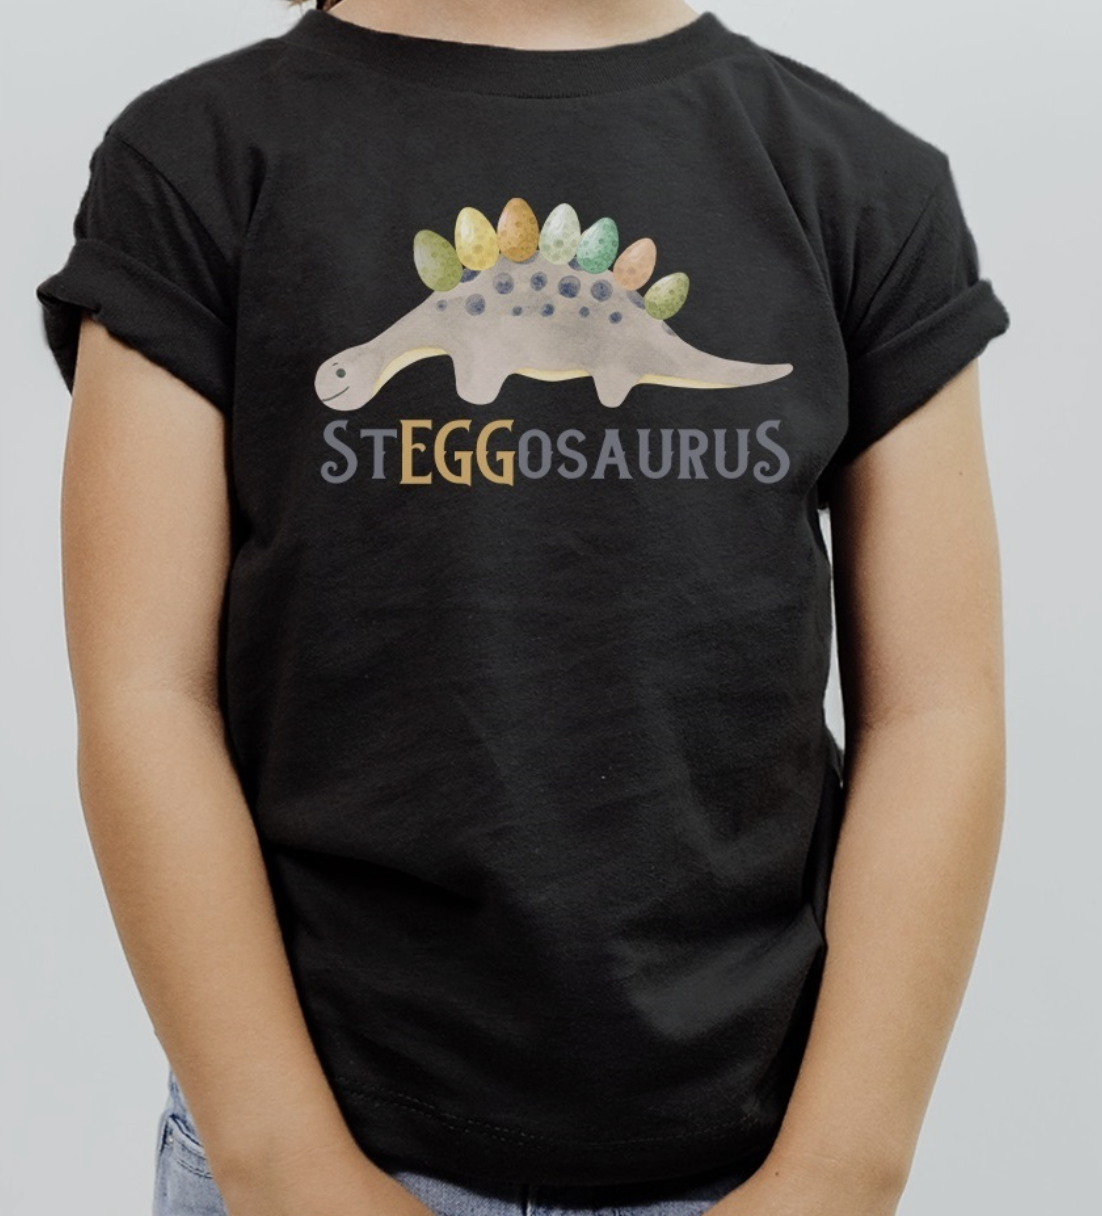 Steggosaurus Easter Tee